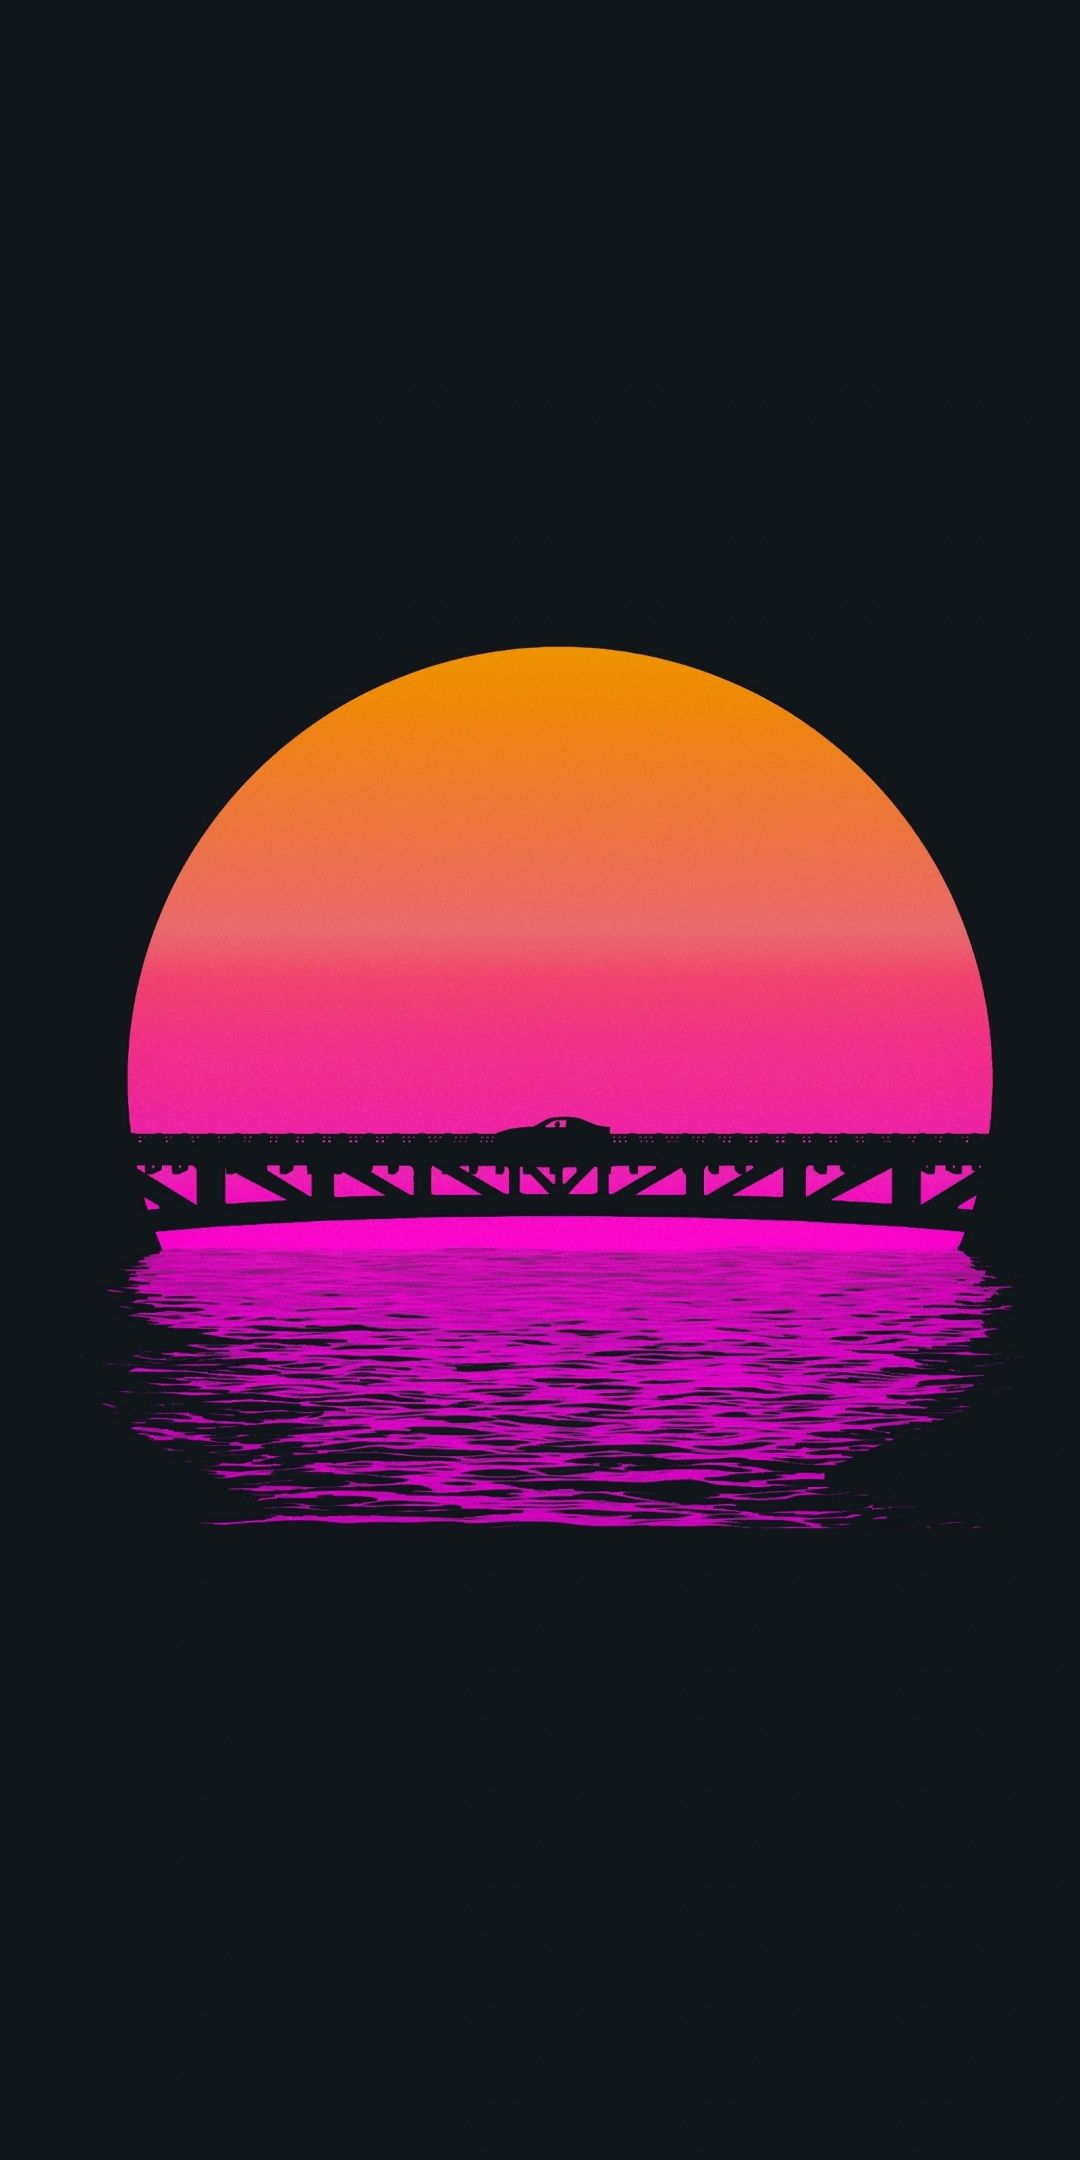 Sunset, lake, bridge, minimal, 1080x2160 wallpaper. Graphic